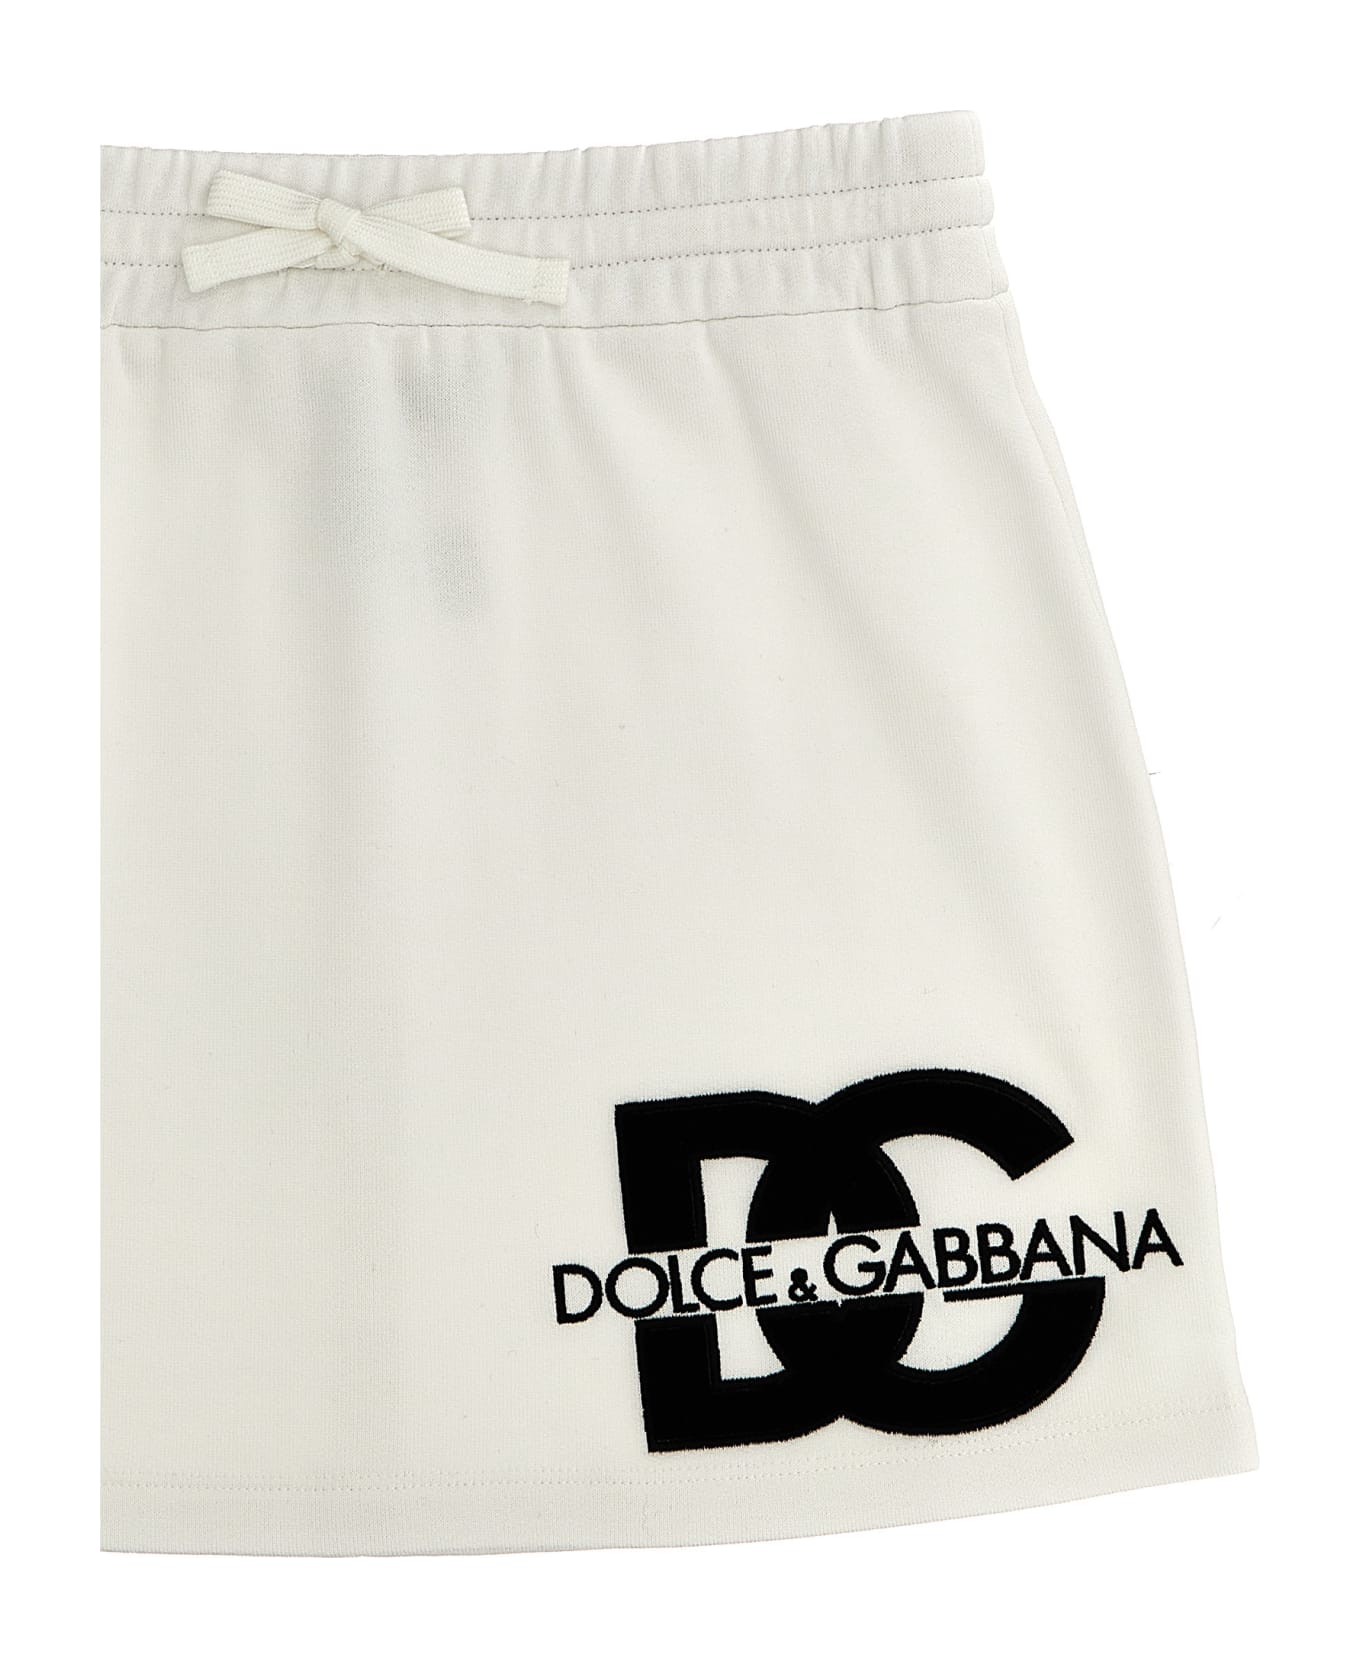 Dolce & Gabbana Mini Skirt - White/Black ボトムス